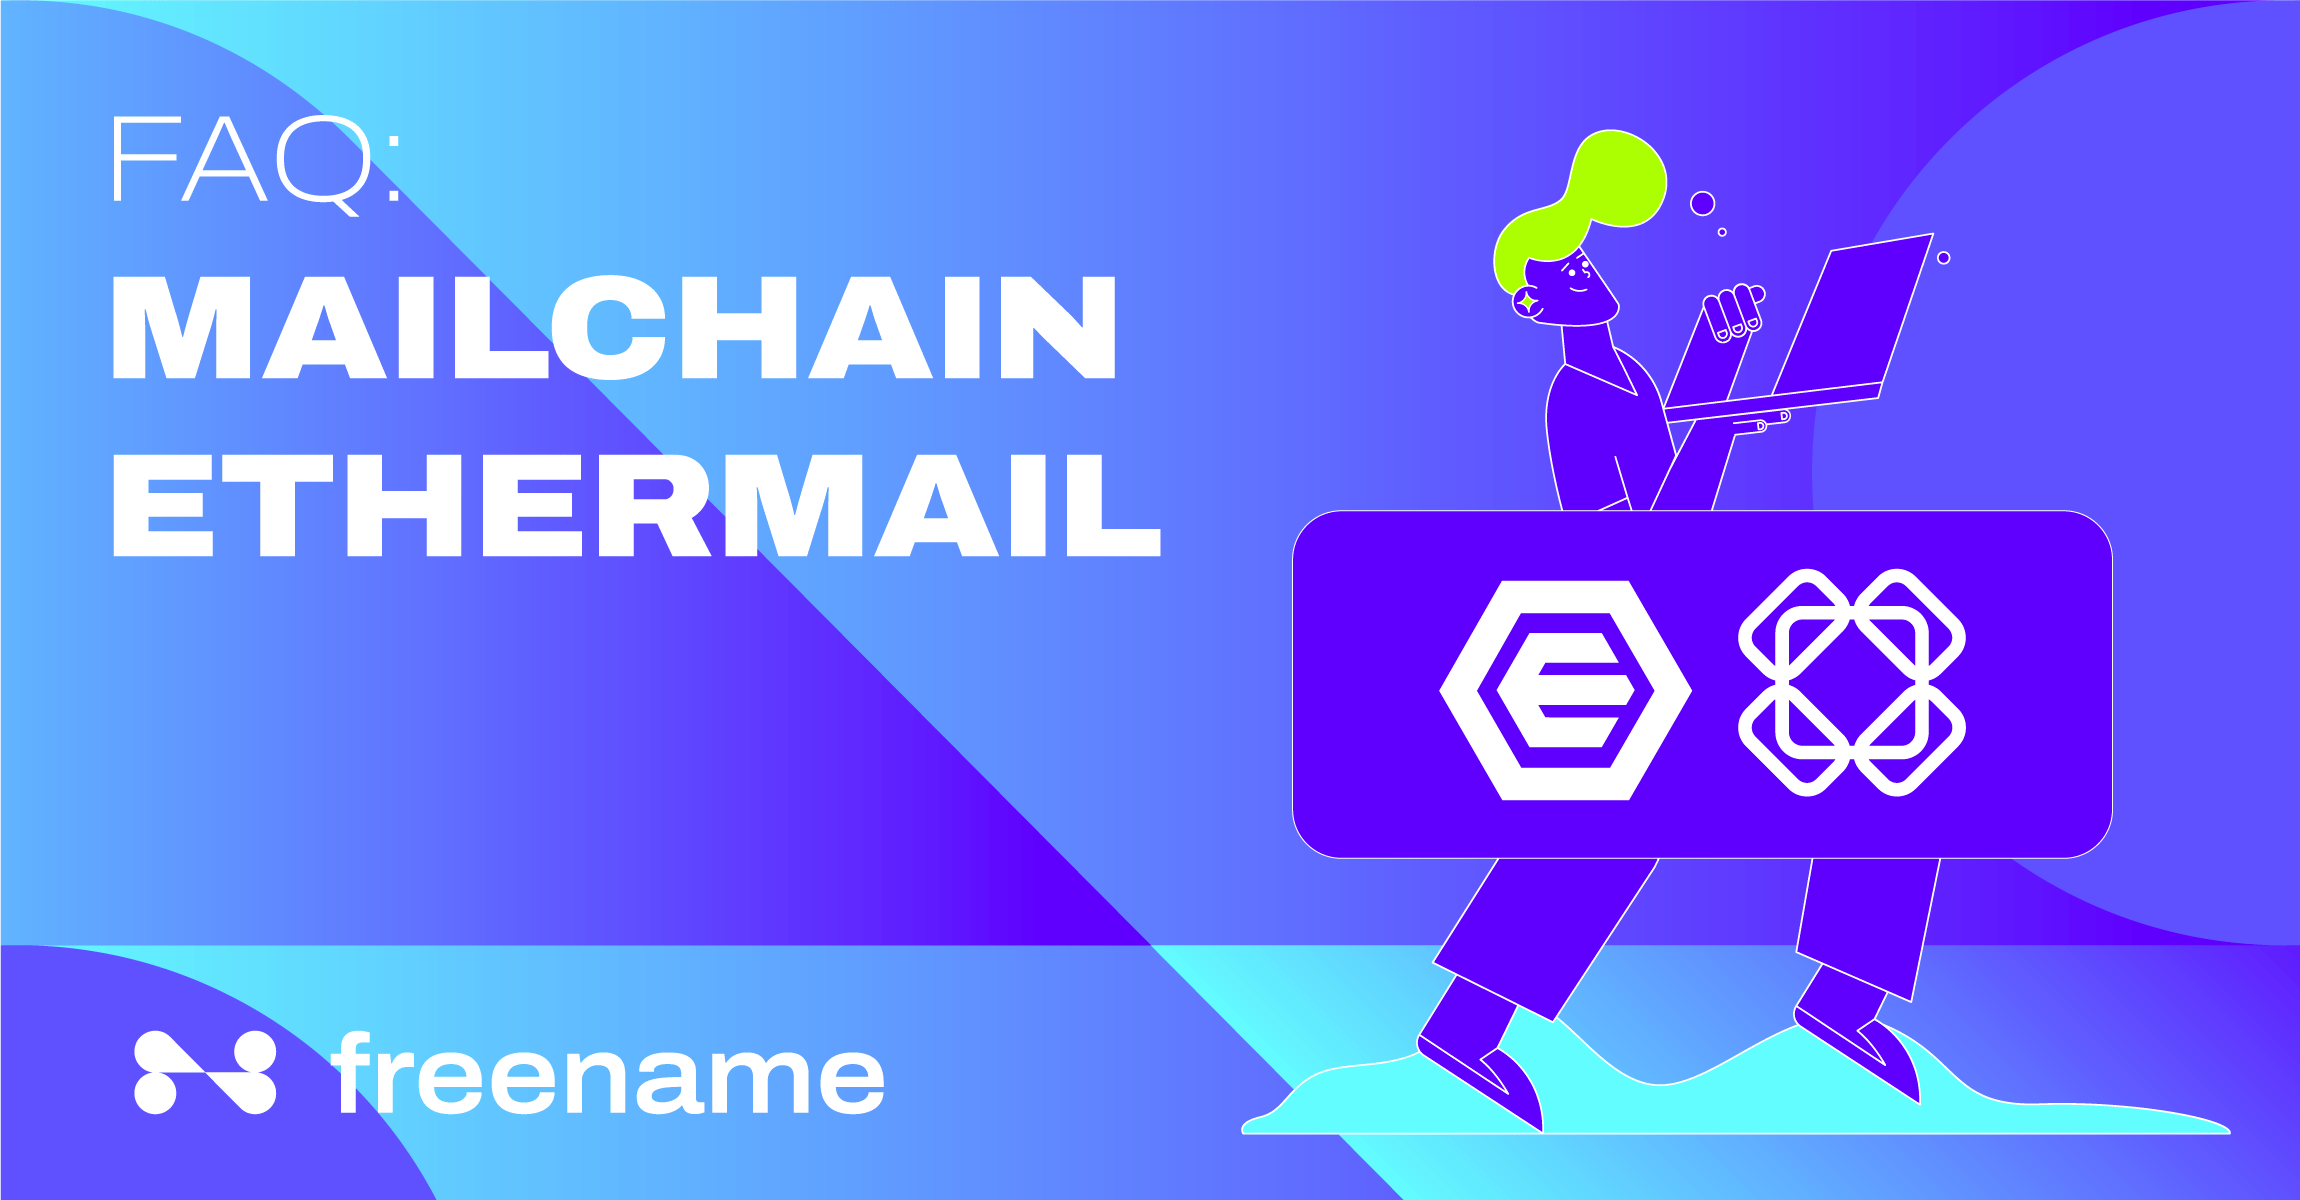 FAQ: Mailchain Ethermail